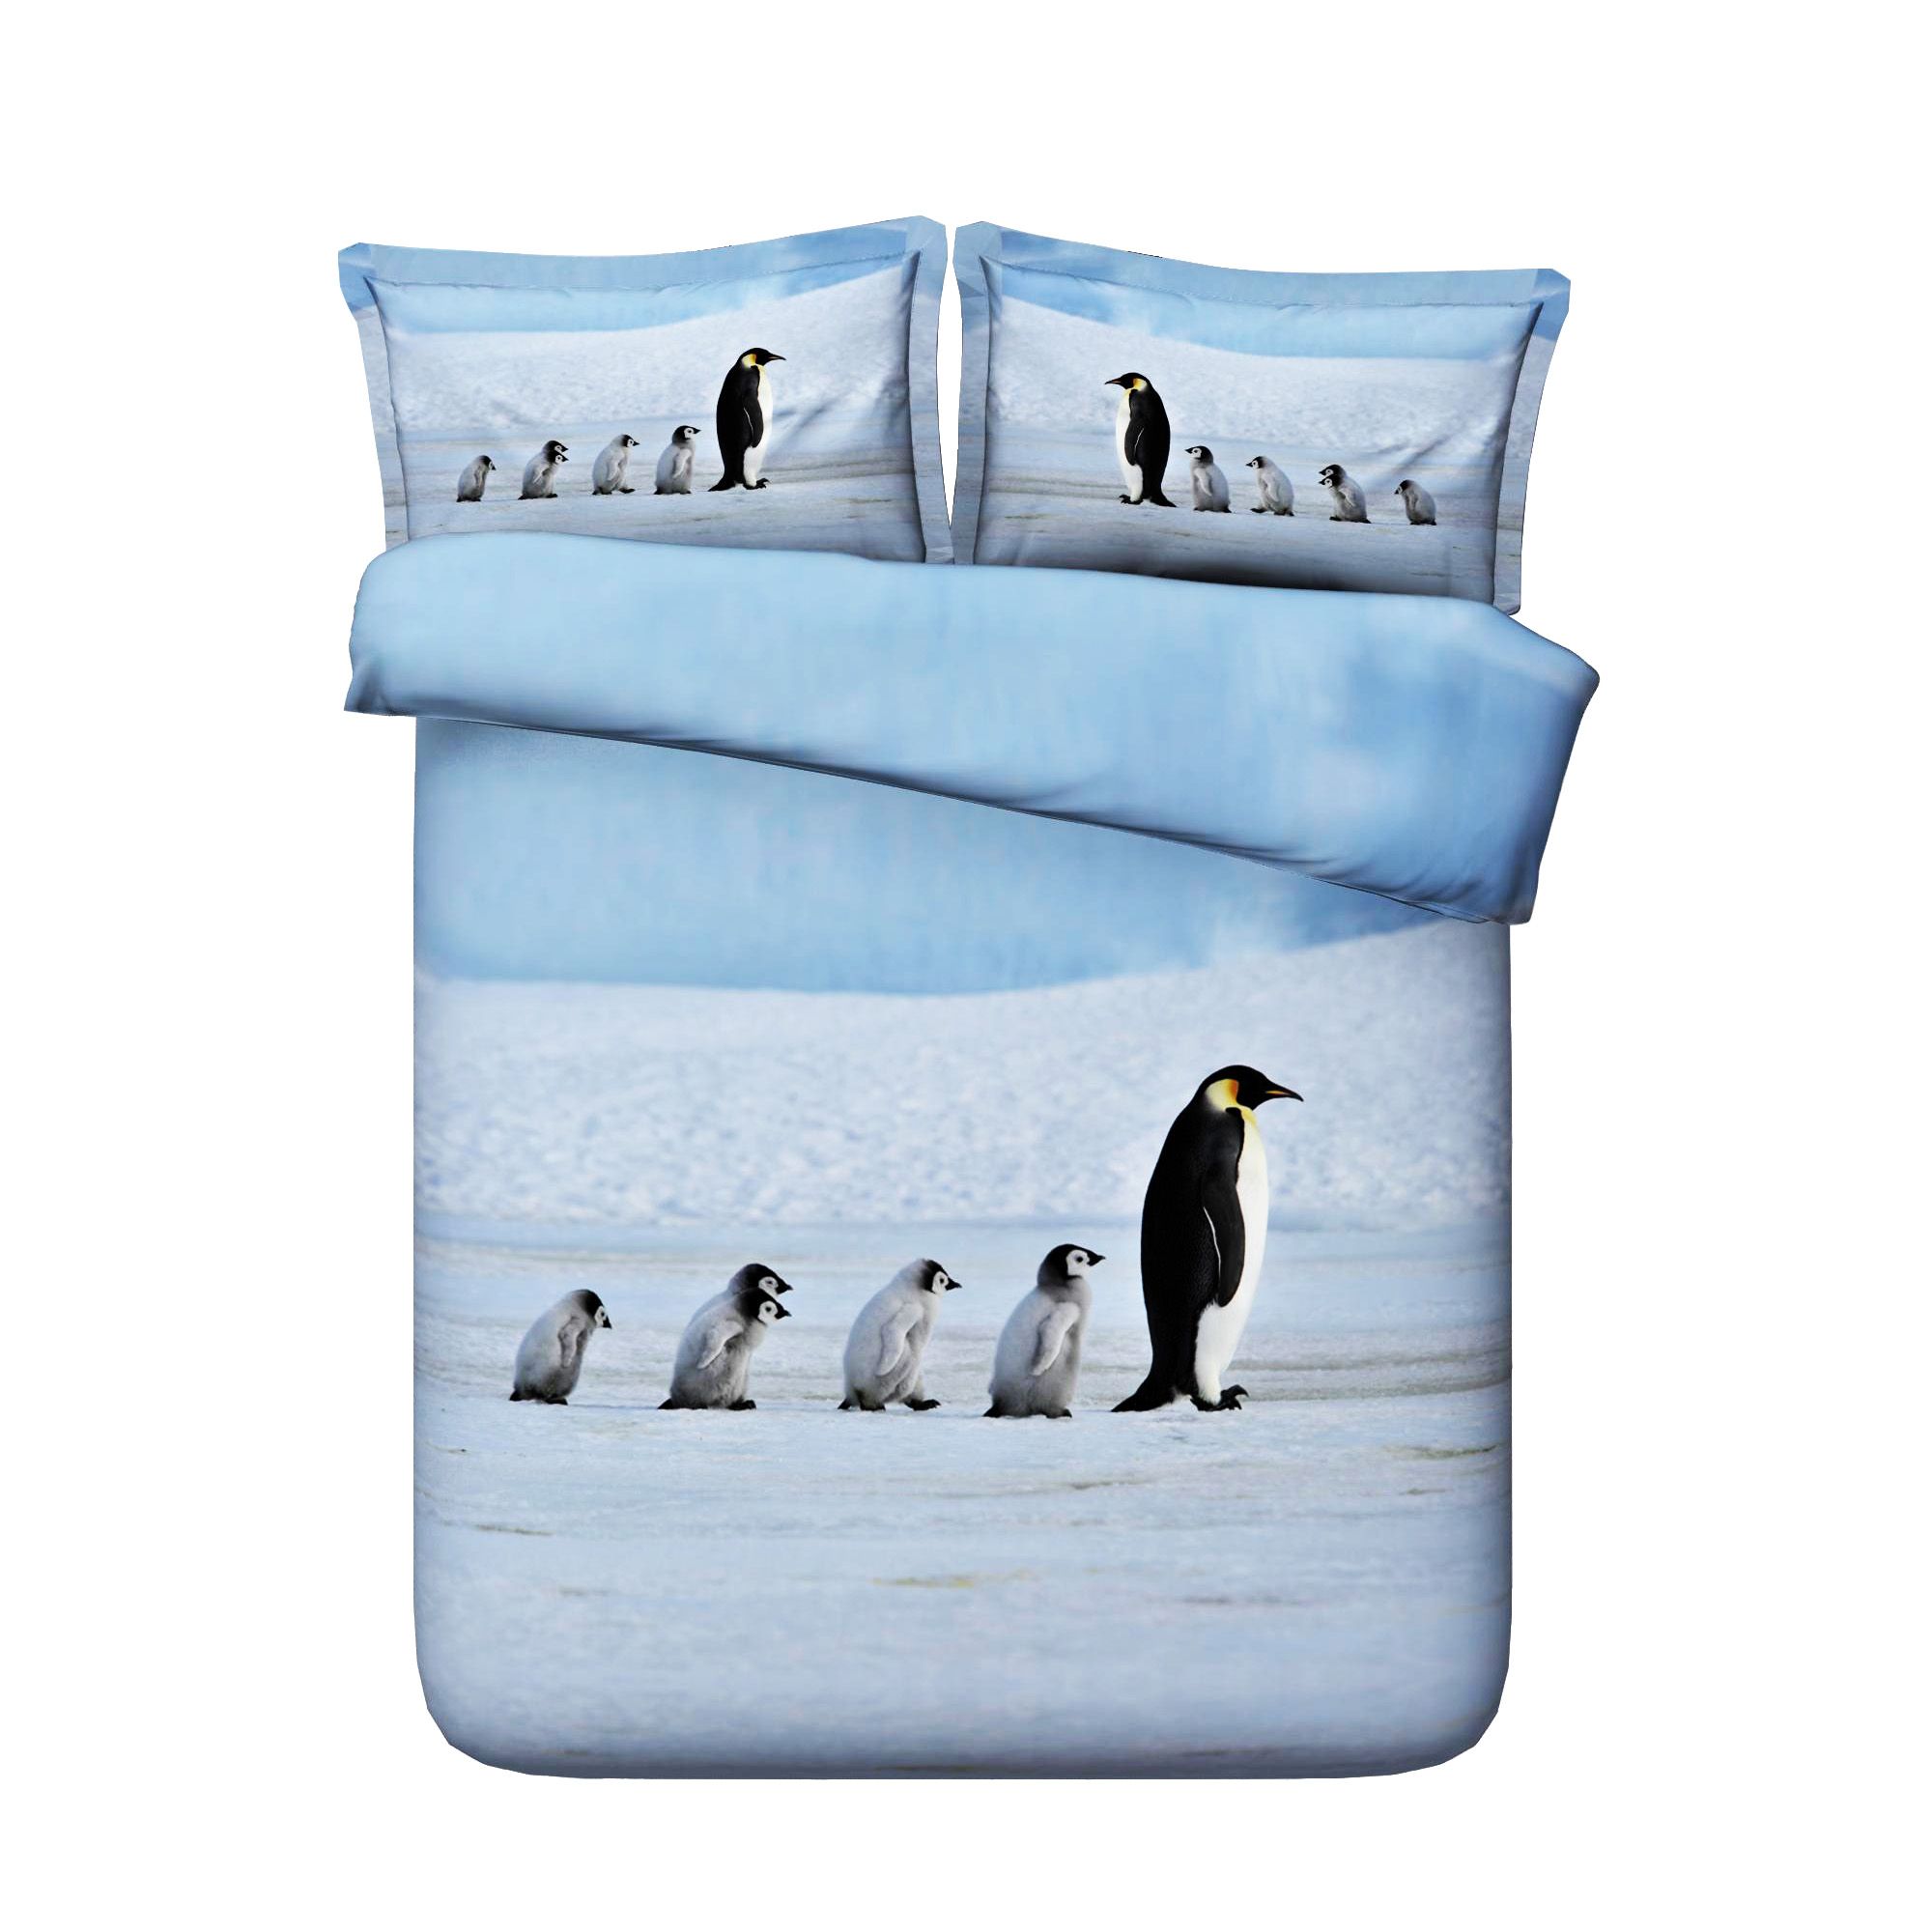 Animal Penguin Print Quilt Cover Bedding 1 Duvet Cover 2 Pillow